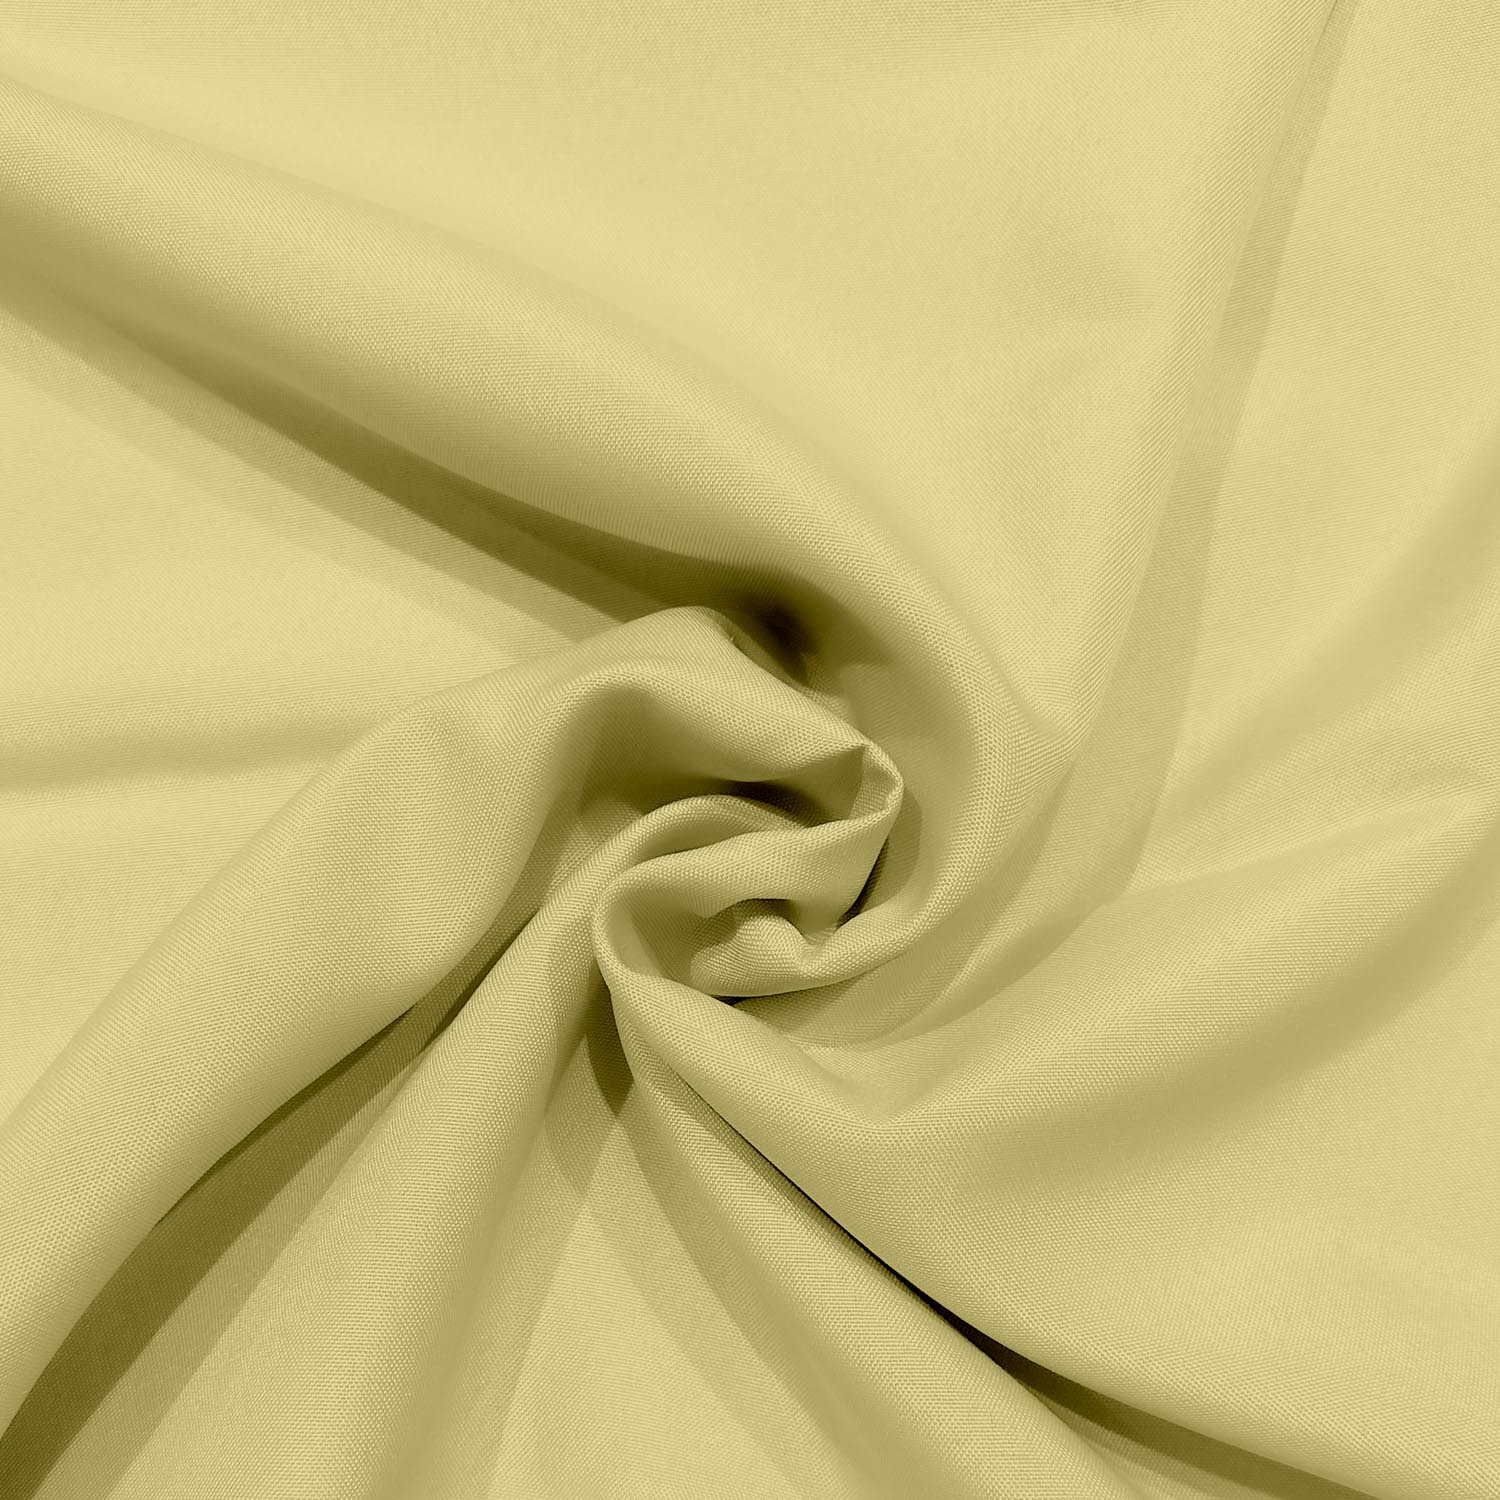 Nappe anti tâche en polyester 140 x 240 cm (jaune)